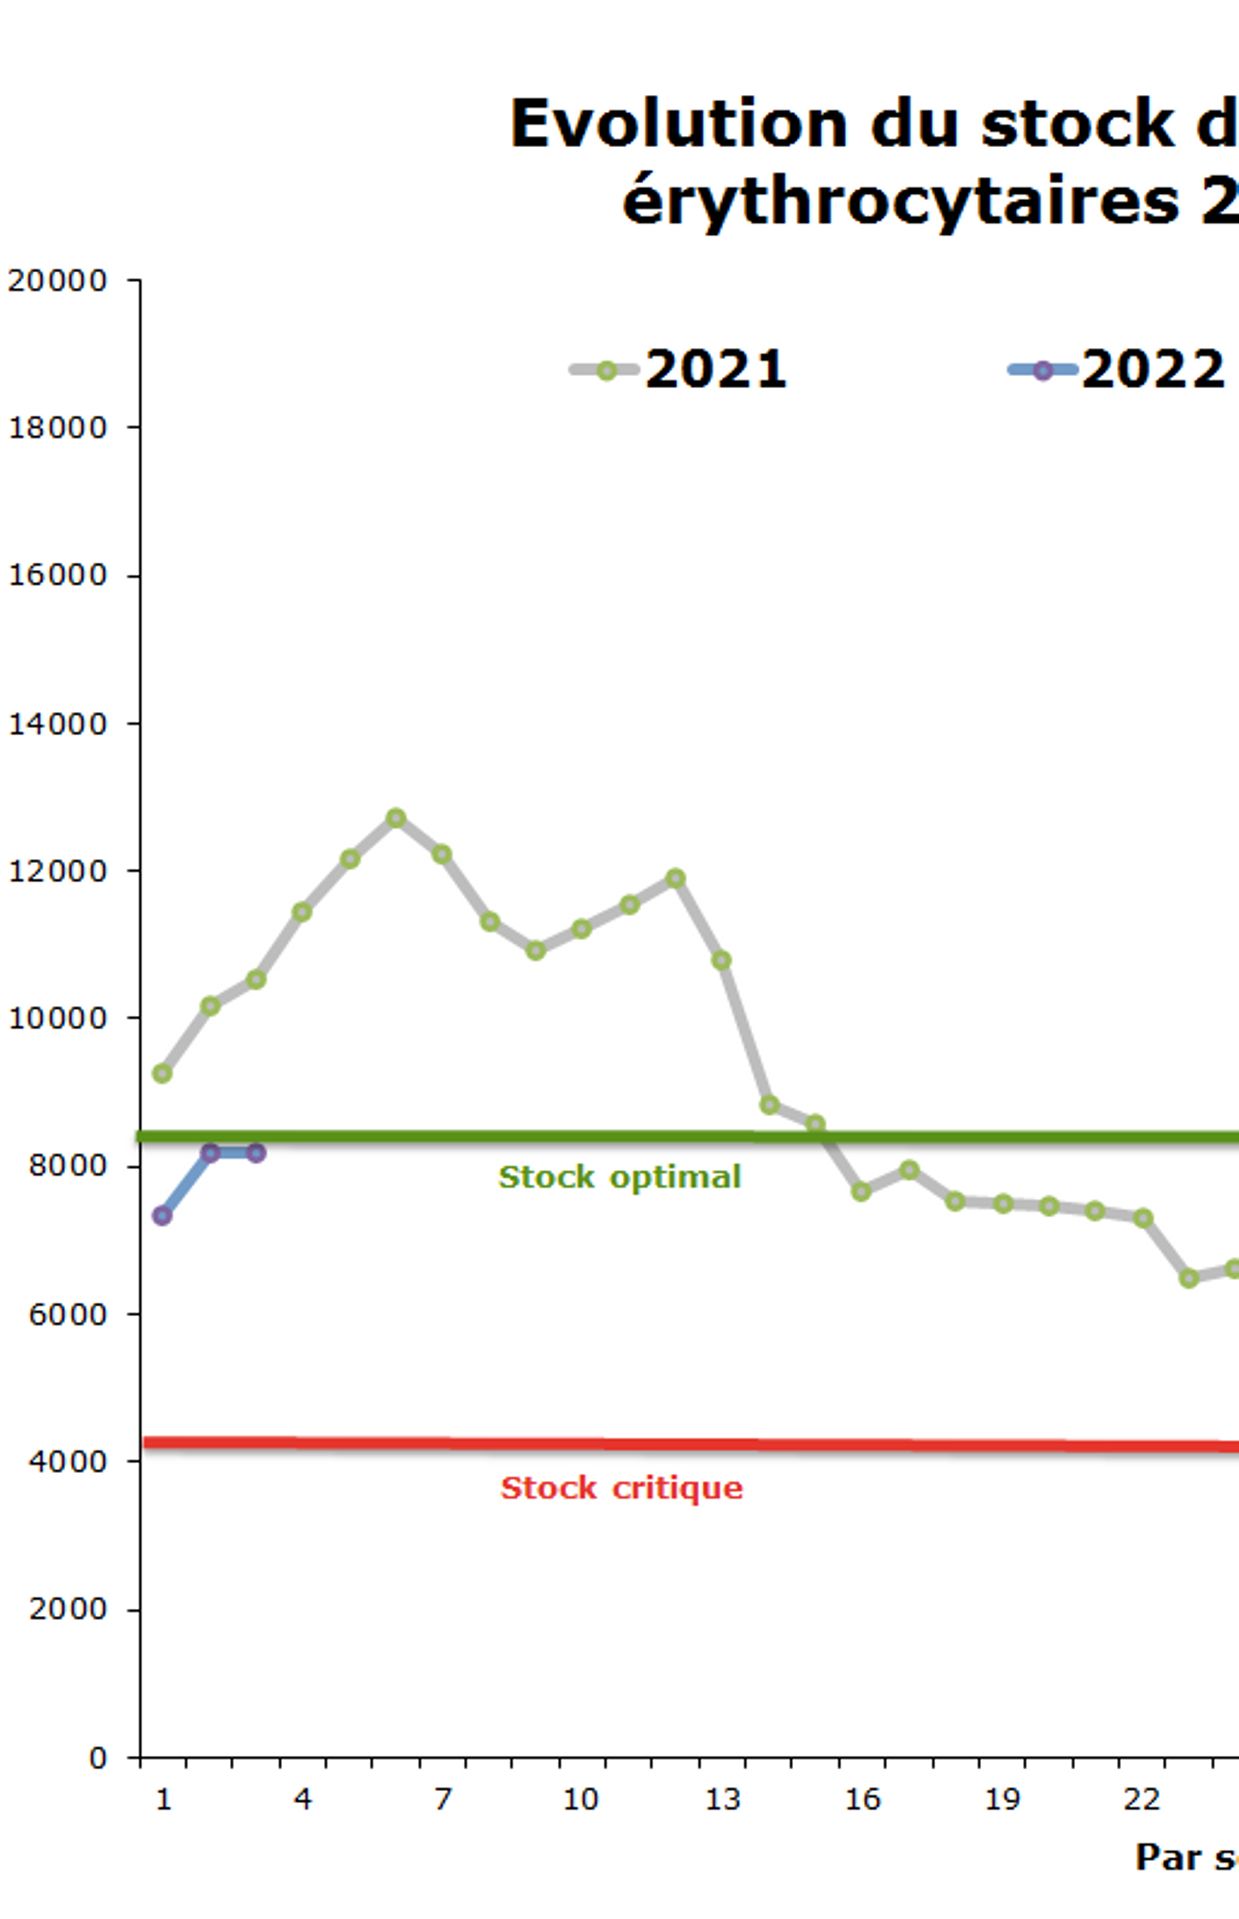 Evolution du stock de poches de sang en Belgique en 2021 et 2022.